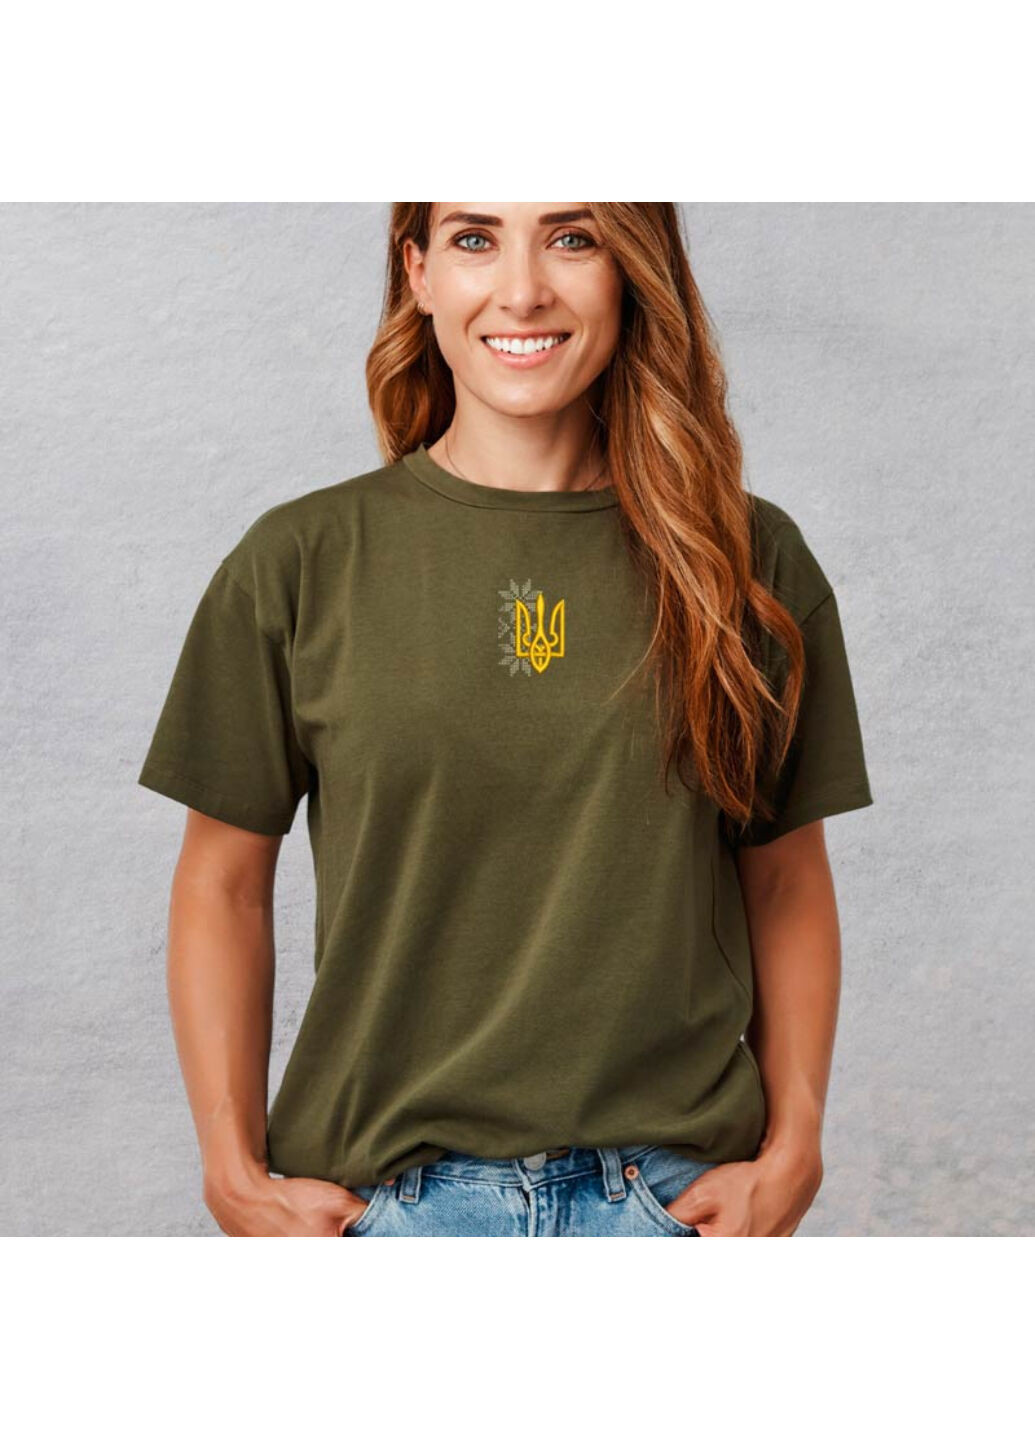 Хакі (оливкова) футболка з вишивкою тризуба 02-5 жіноча хакі s No Brand